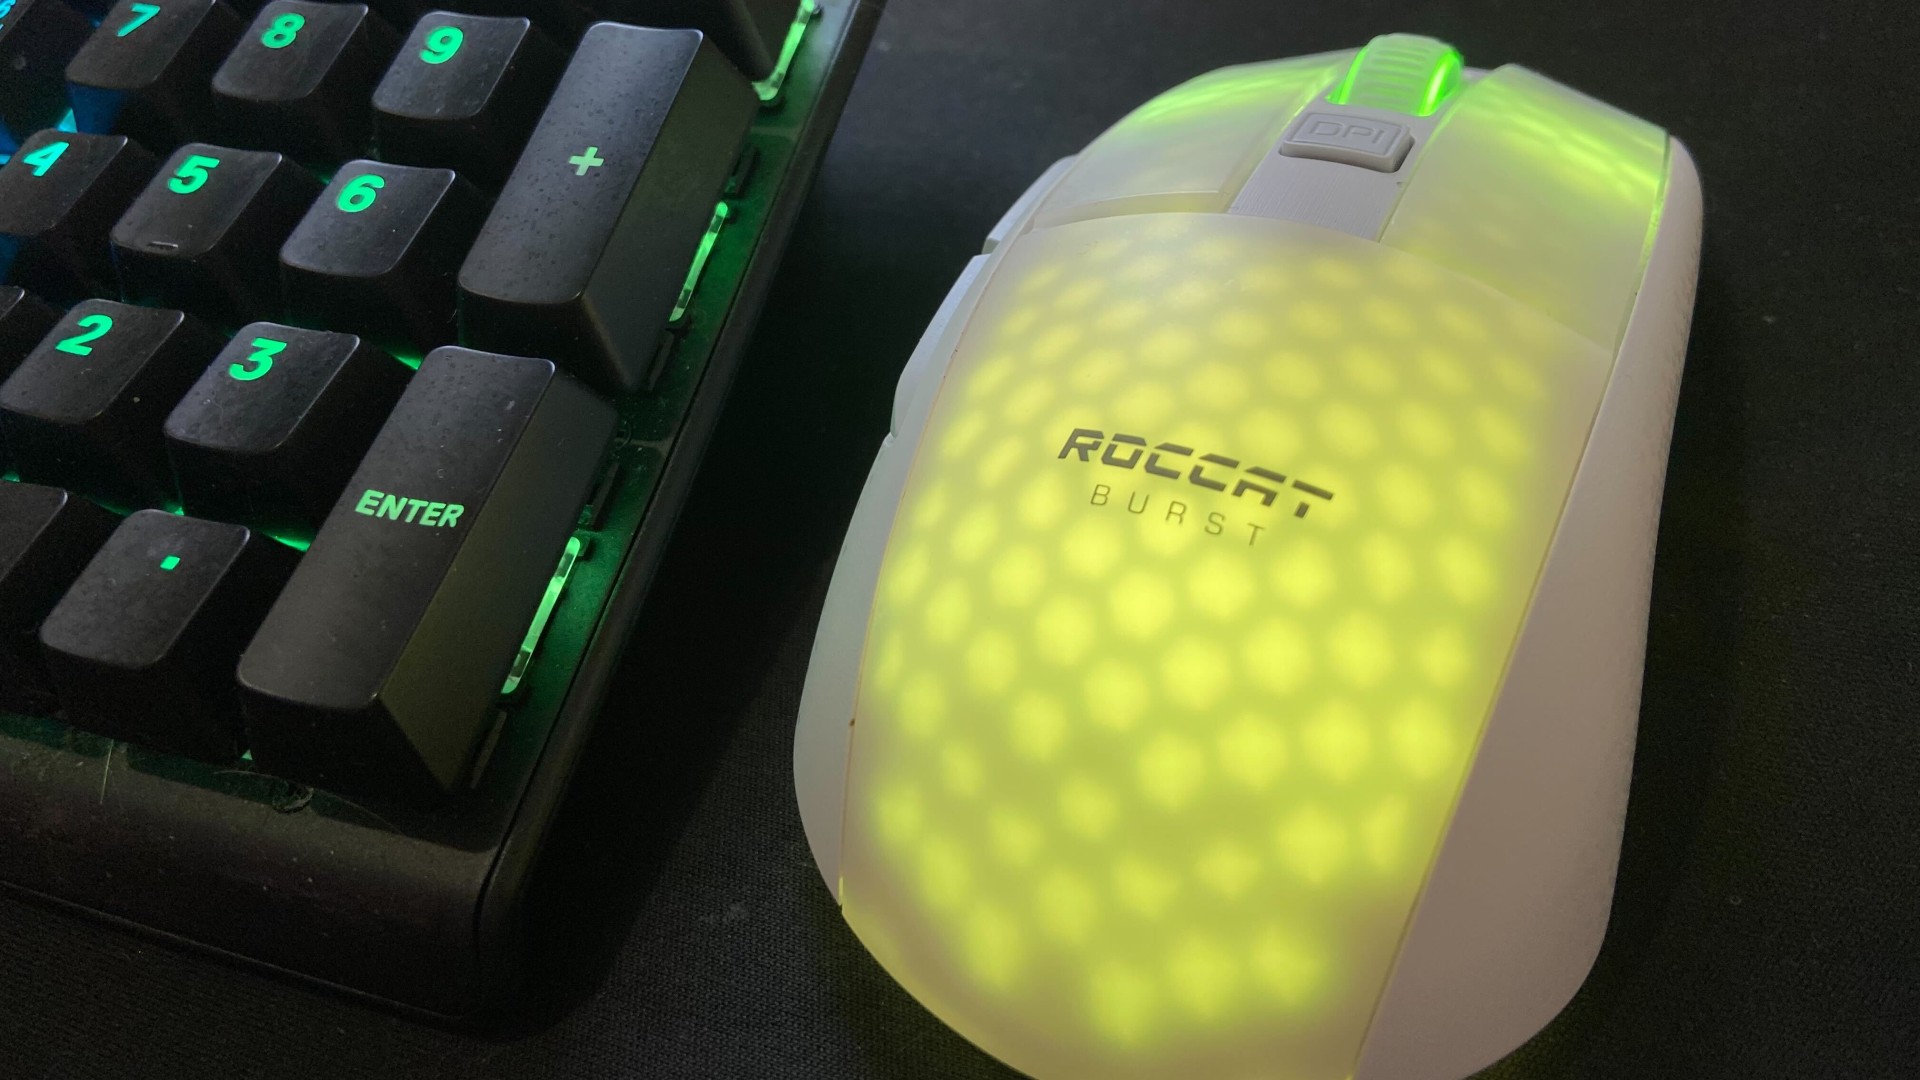 Roccat Burst Pro Air Mouse Unboxing & Review! 